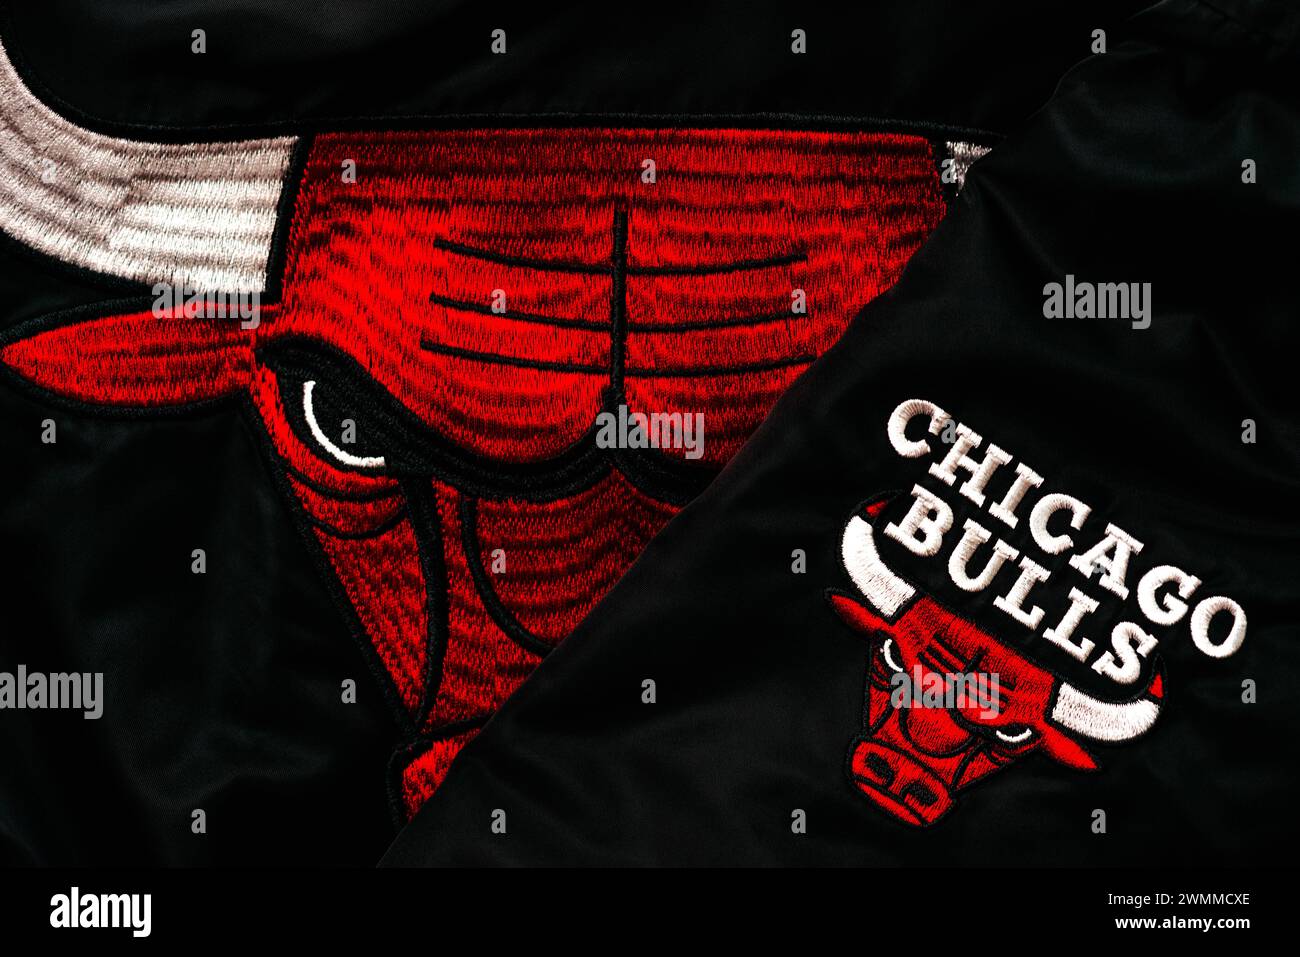 Marchio del team Chicago Bulls e firma su una giacca nera. Il logo dei tori della squadra di basket professionistica della american League. Editoriale illustrativo Foto Stock